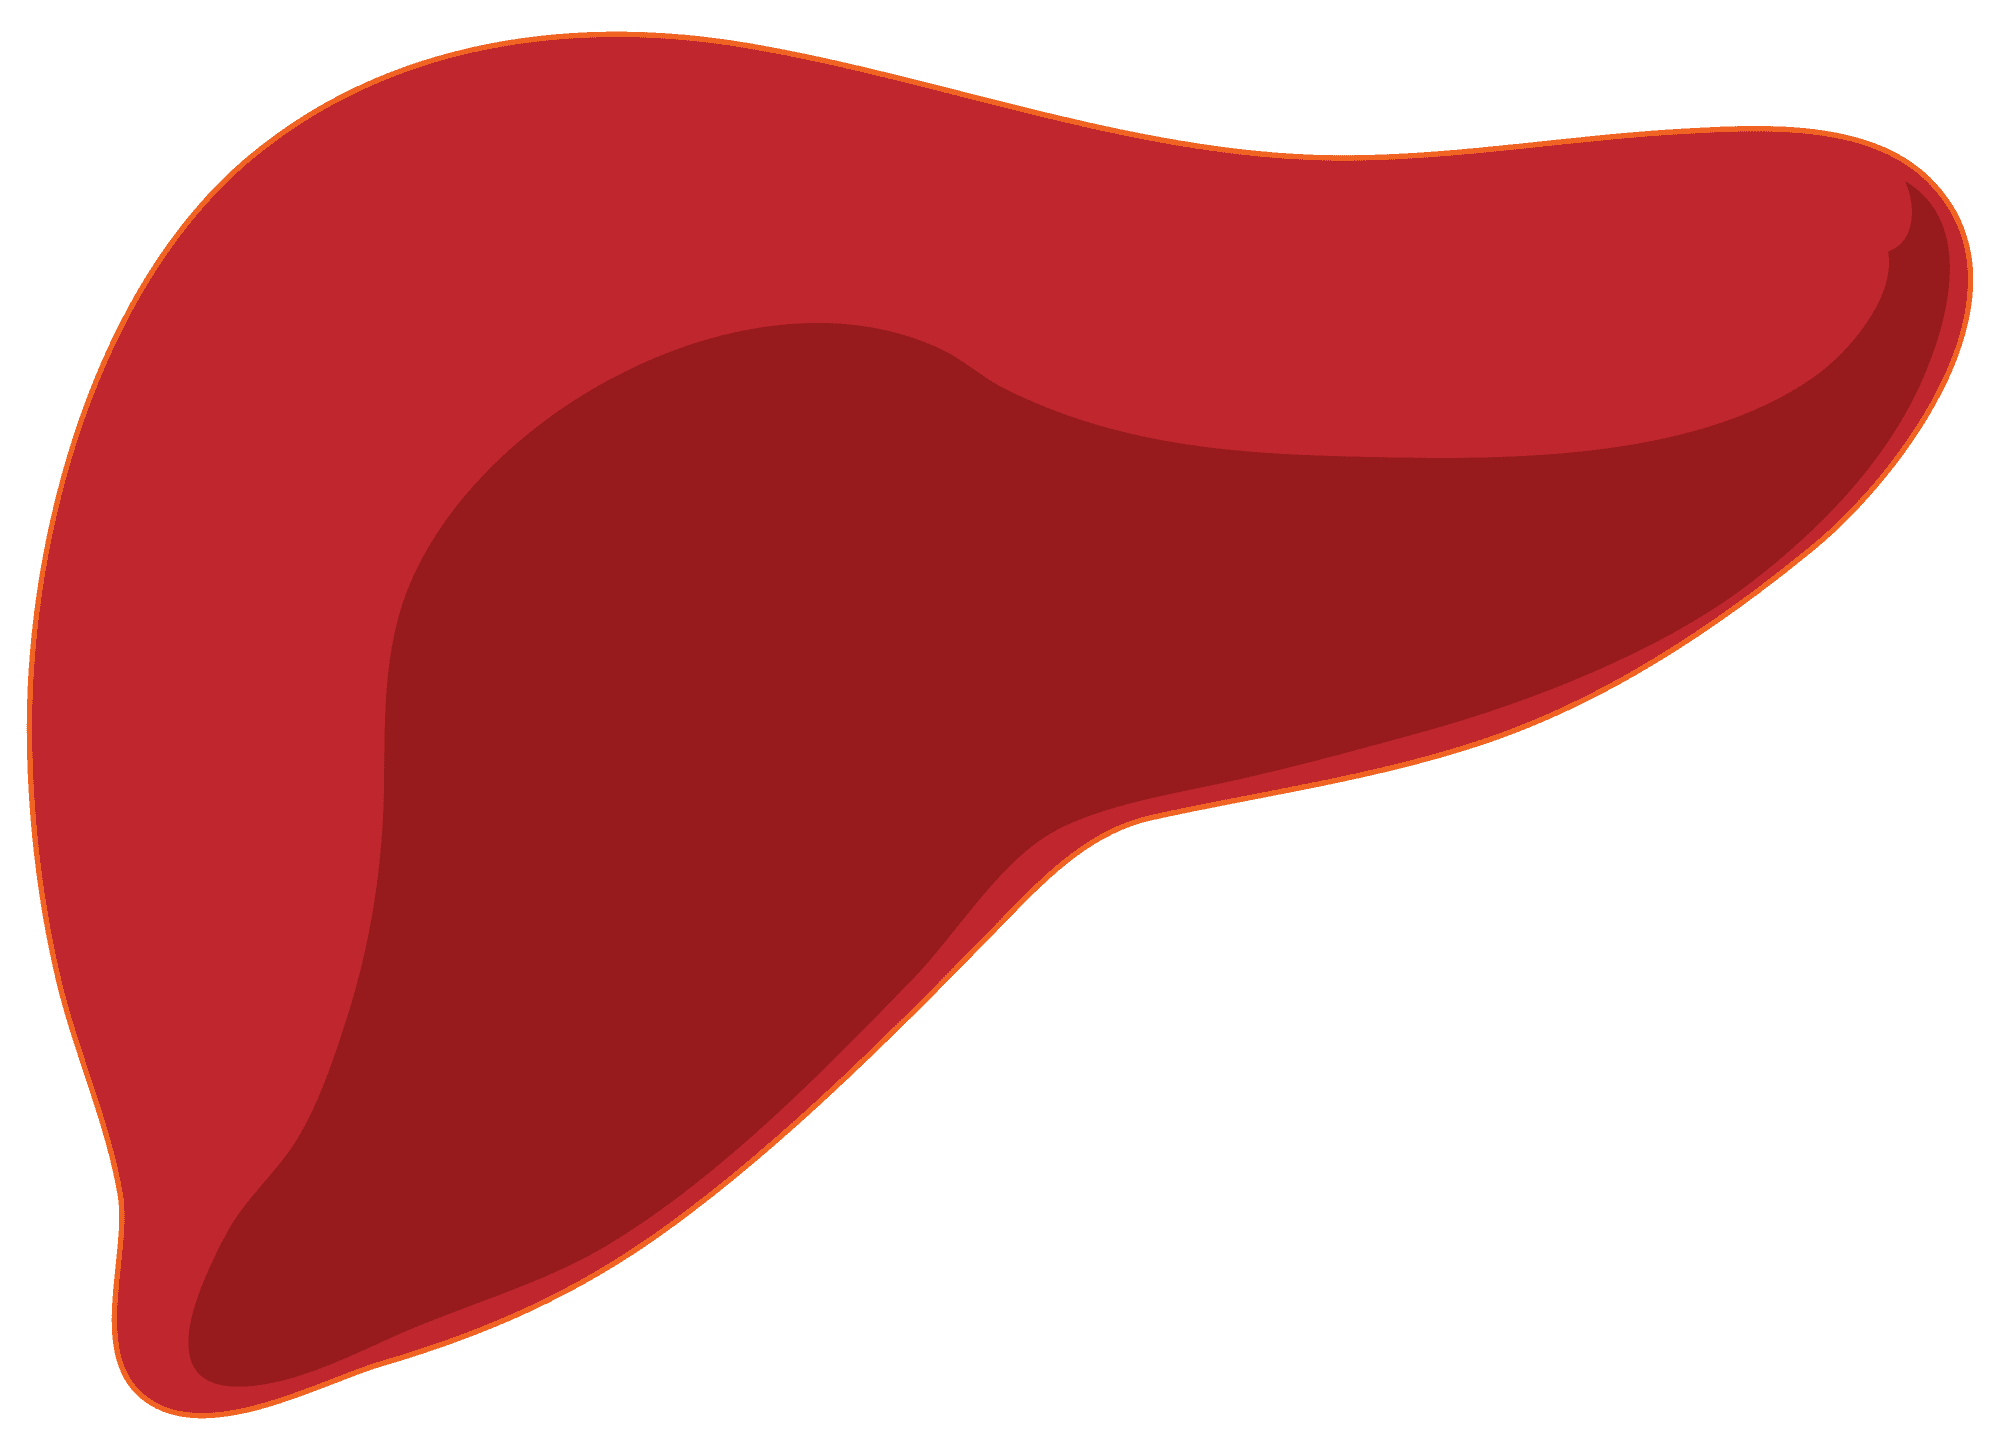 Liver liver food